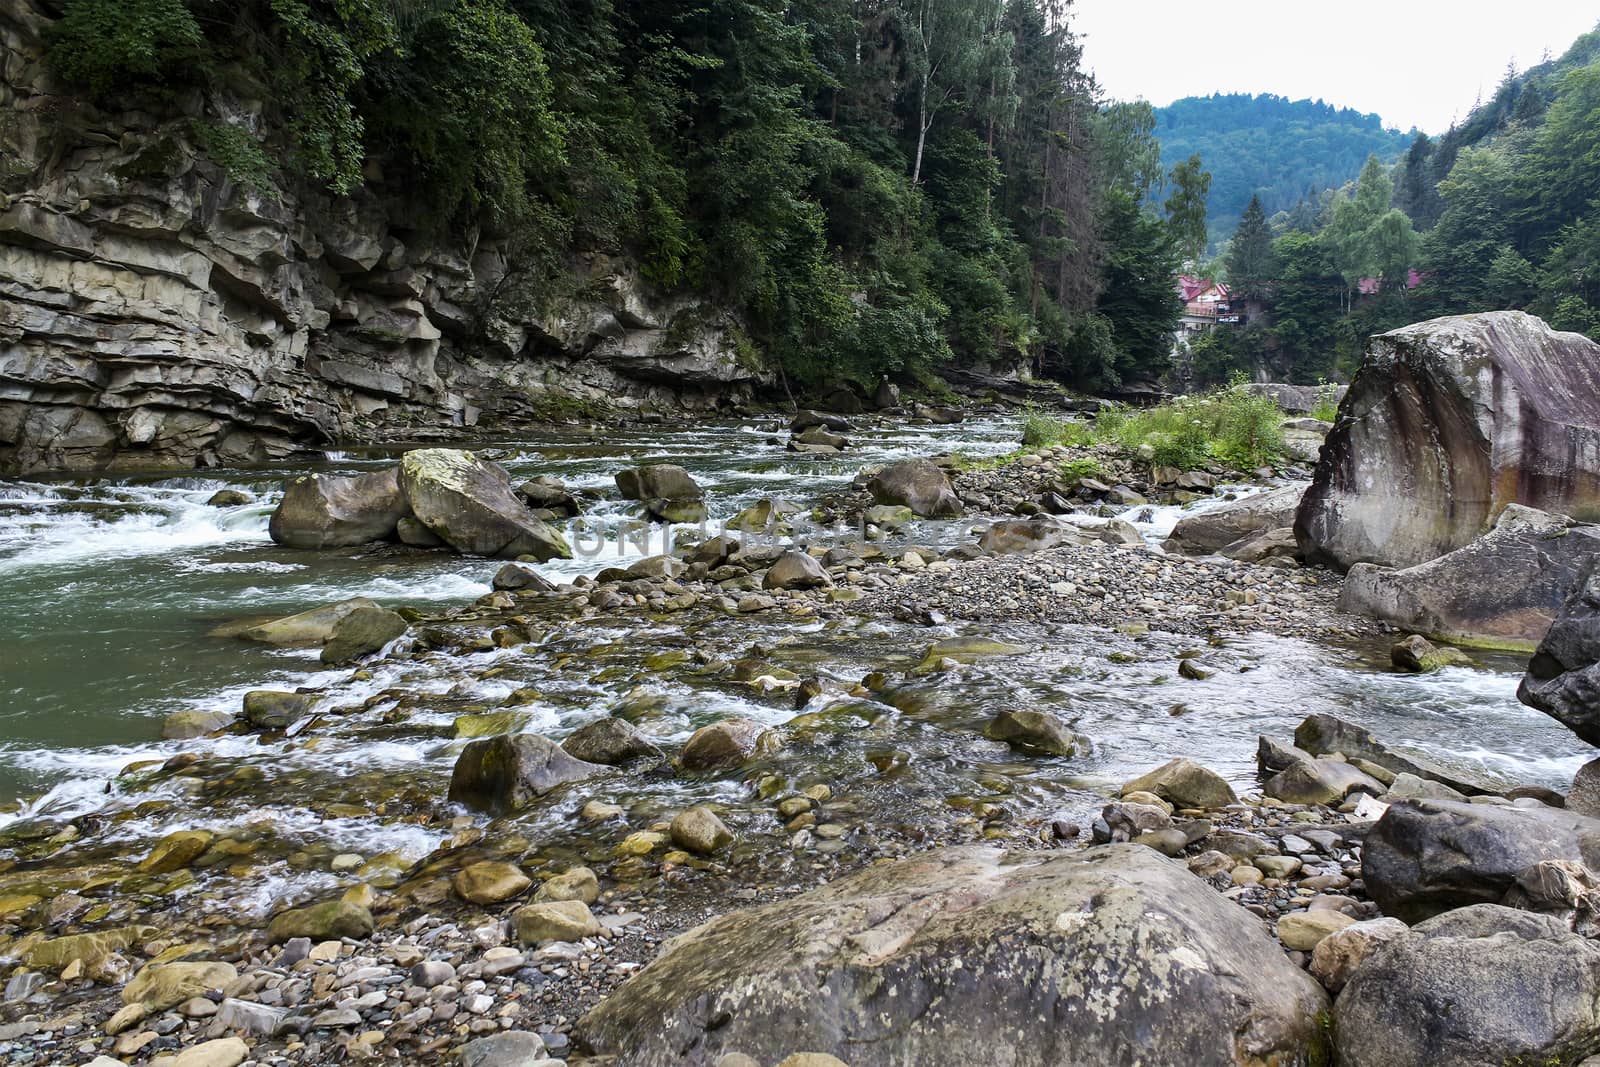 Carpathian Mountain stream by Kate17